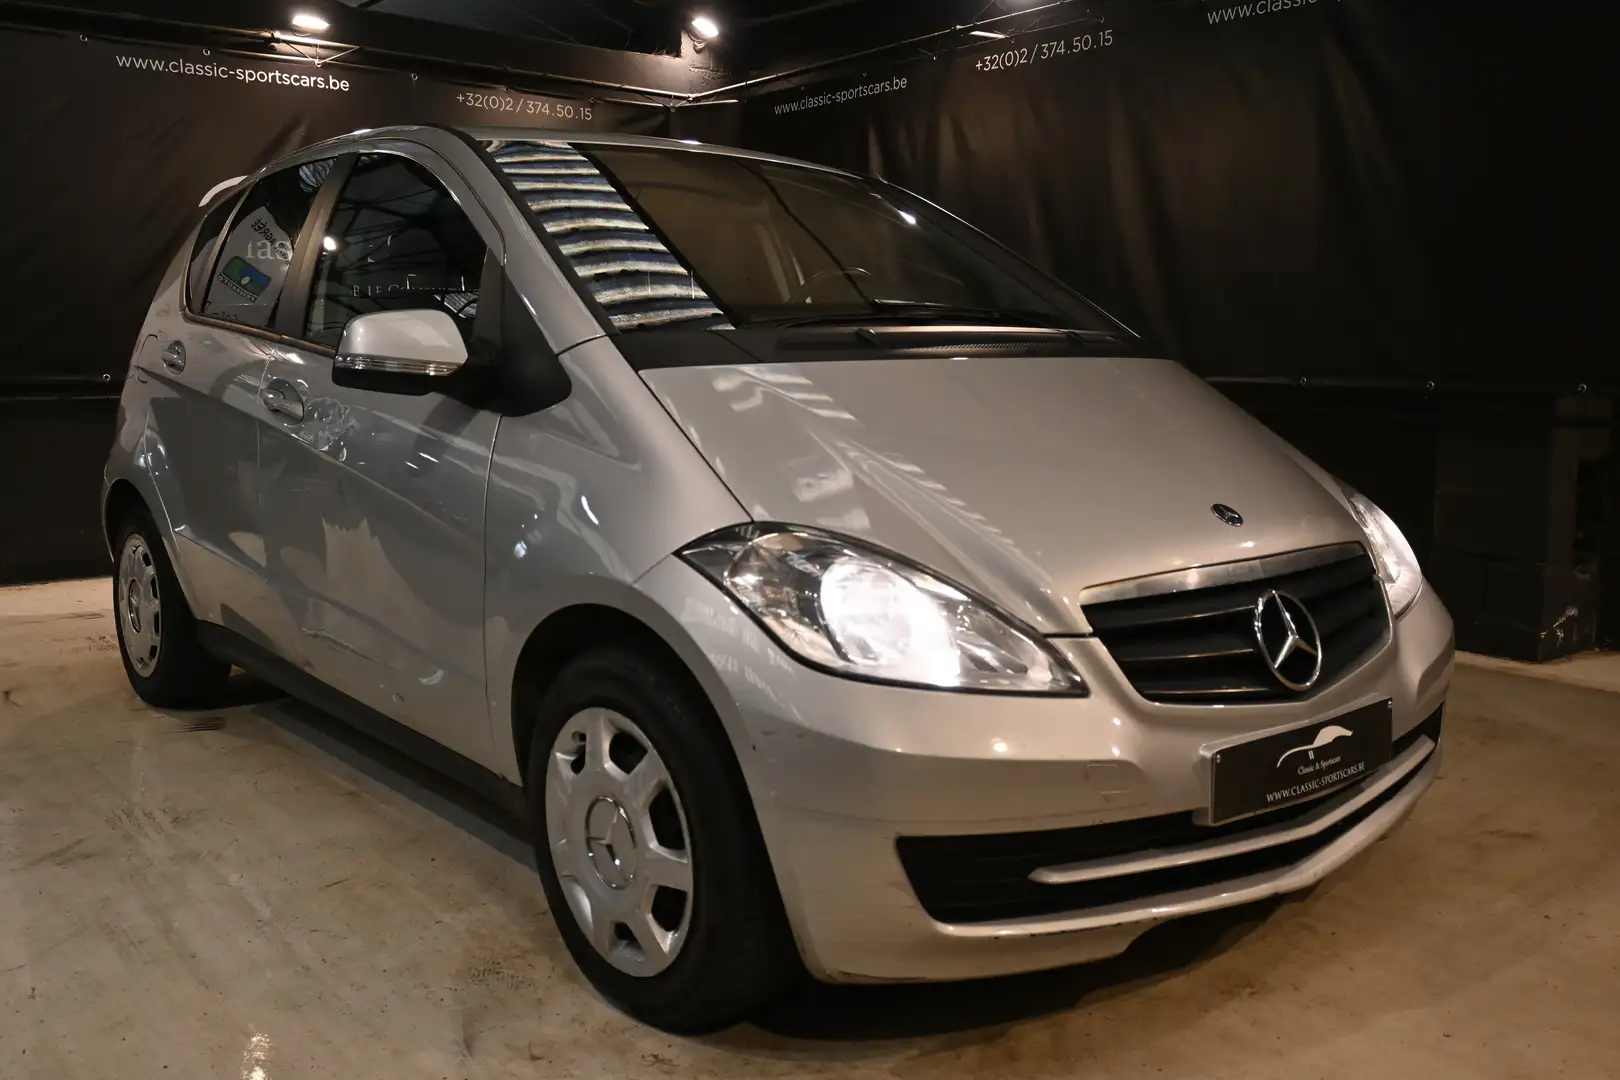 Mercedes-Benz A 180 CDI FACELIFT EURO 5 / BLUETOOTH / MP3 / CT VENTE Plateado - 2